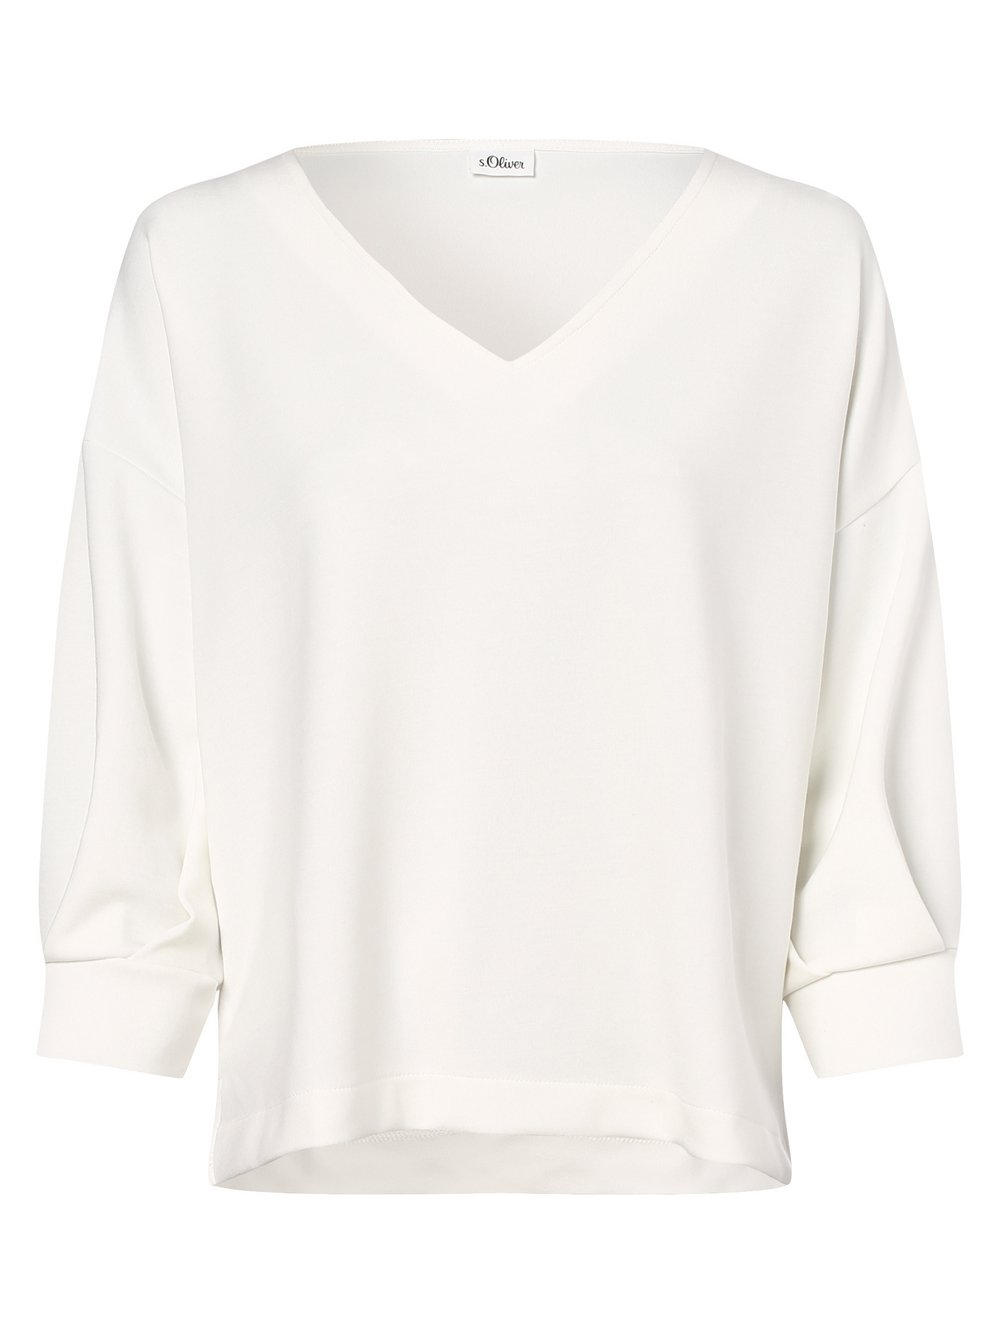 s.Oliver BLACK LABEL - Damska bluza nierozpinana, biały